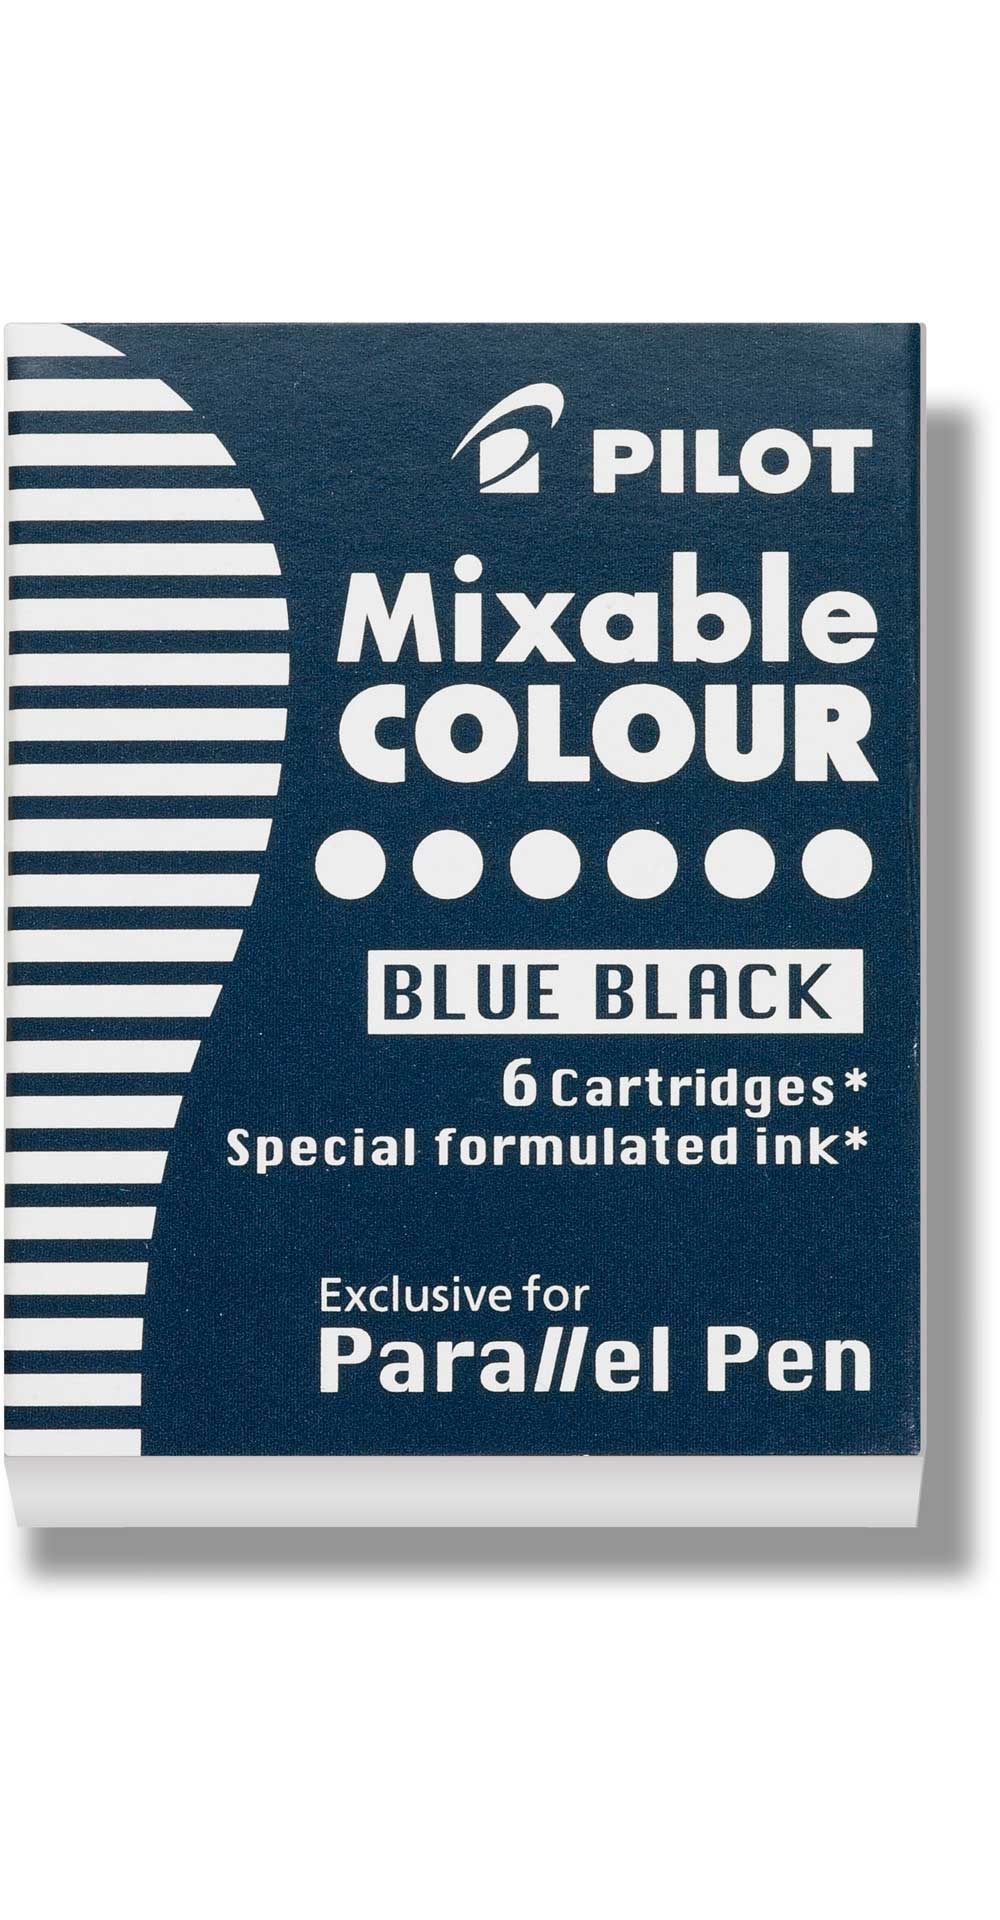 Pilot Mixable Cartridges- Blue Black